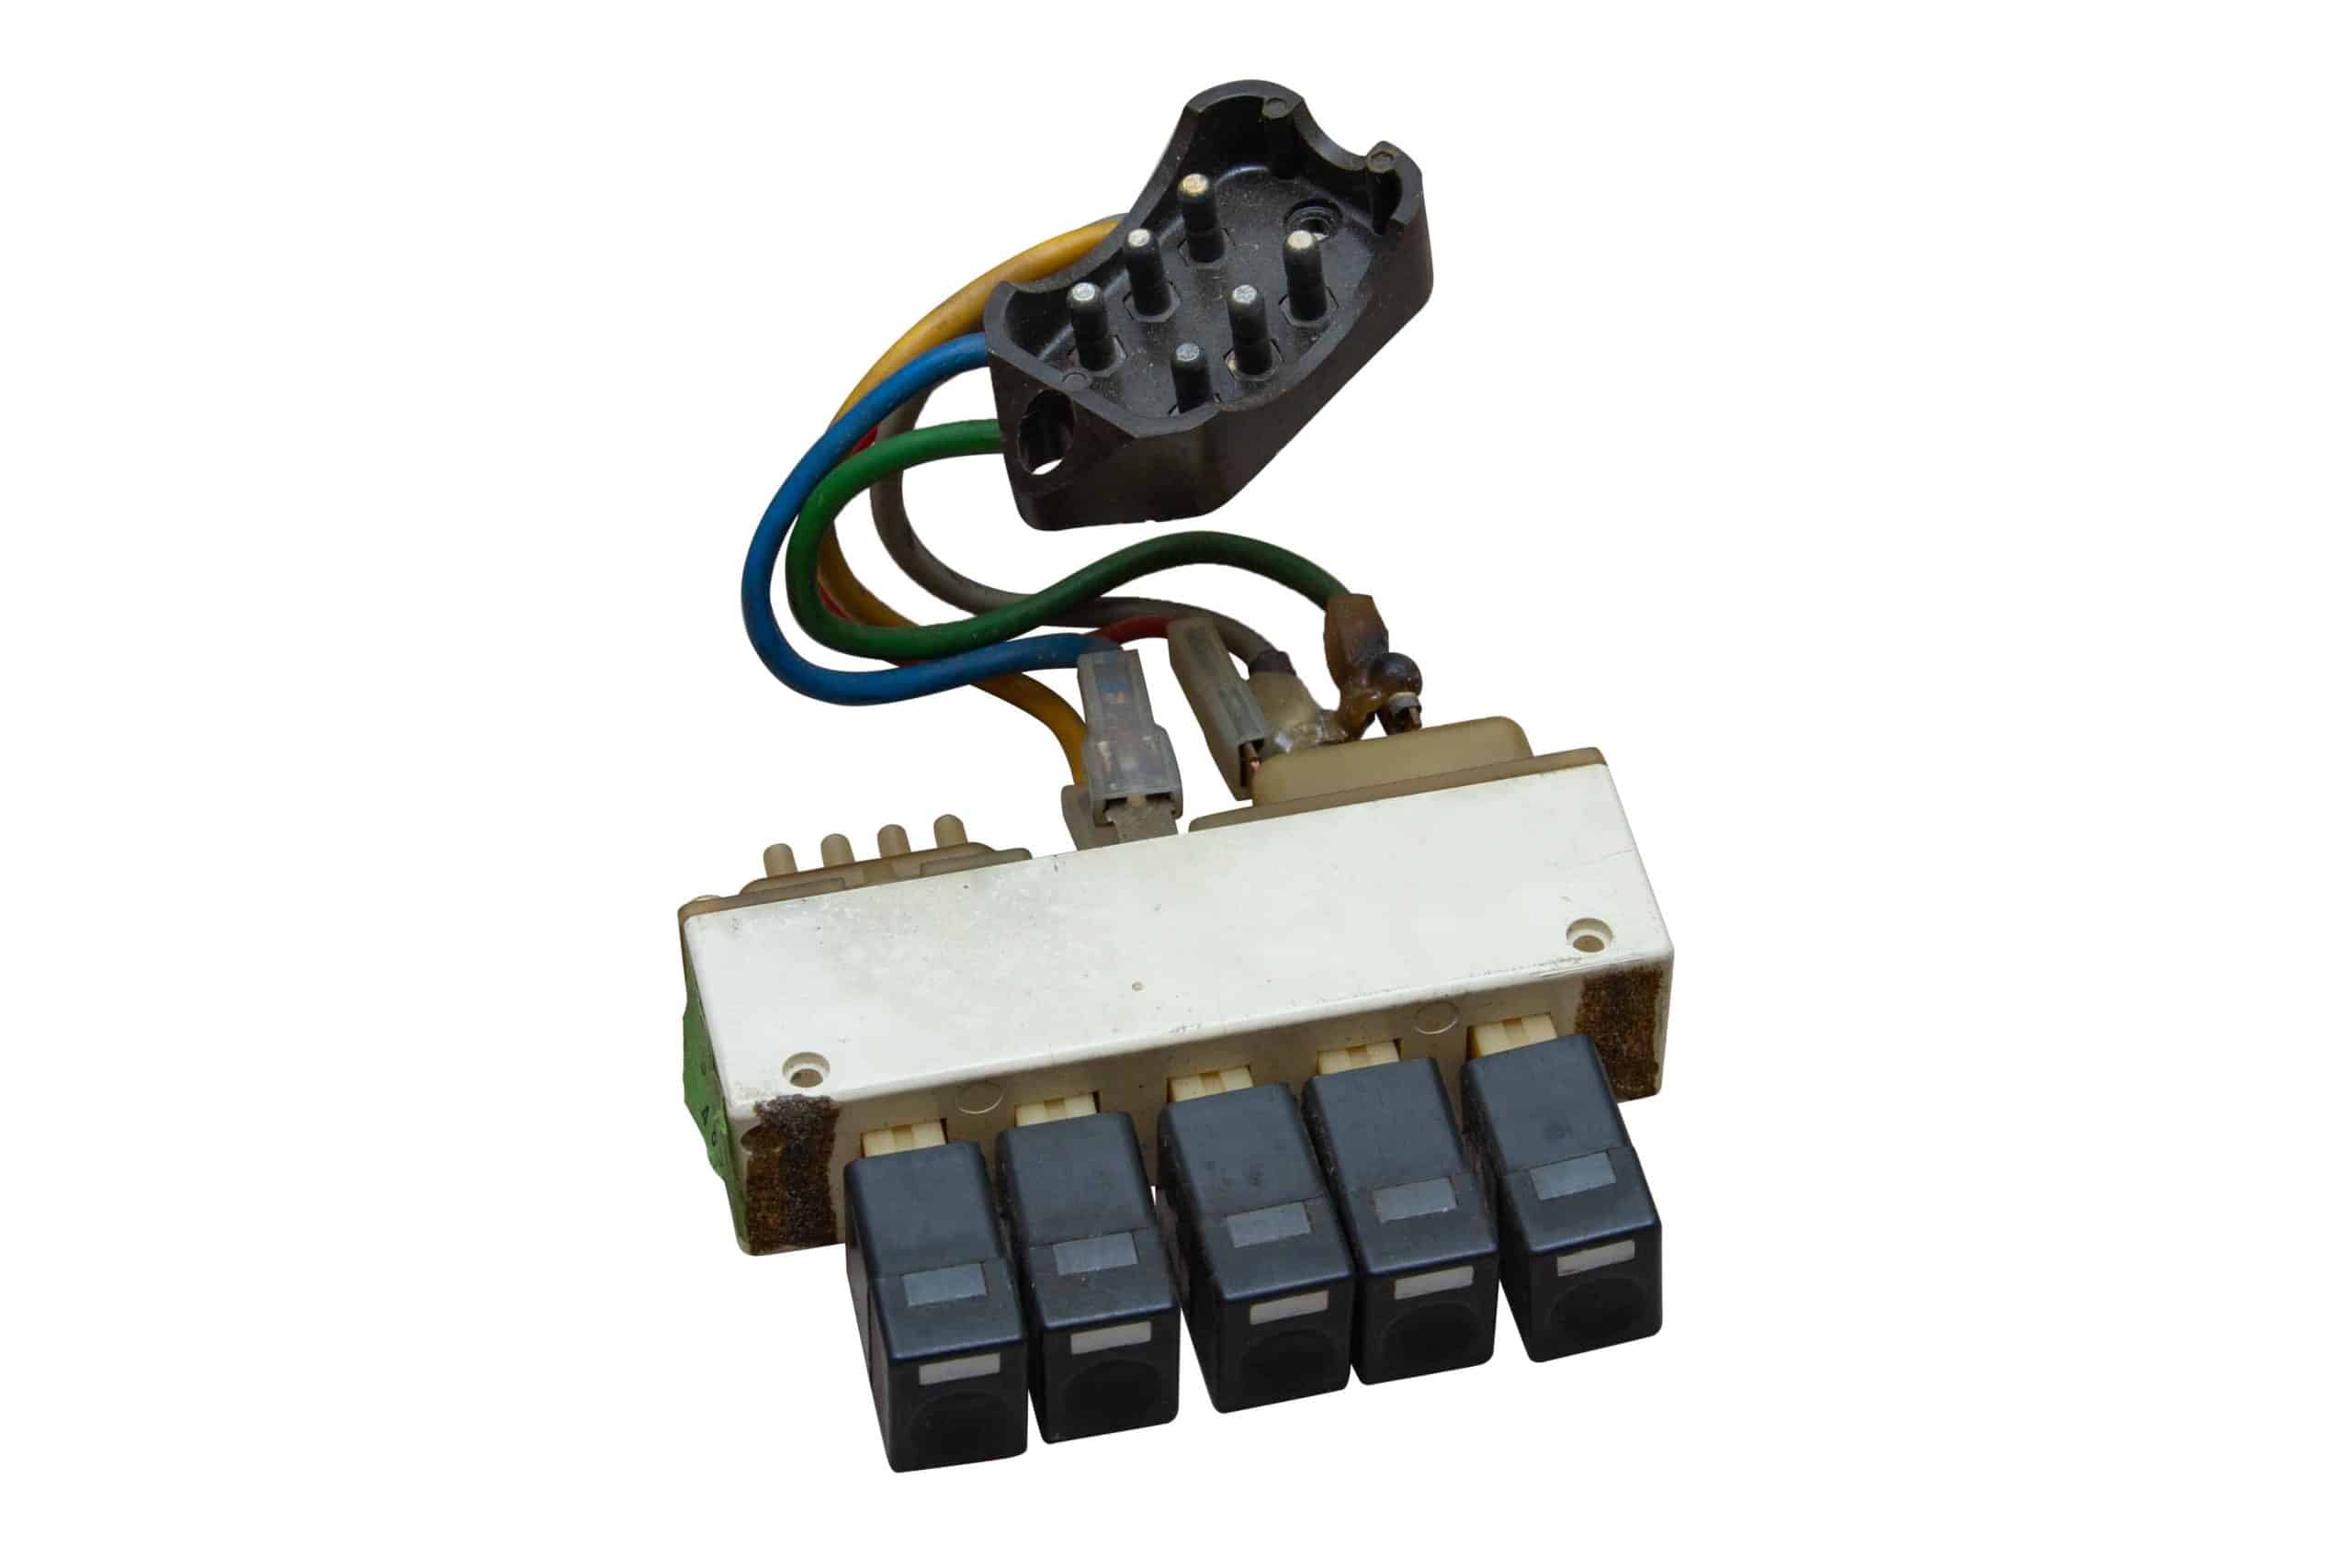 Push Button Control Unit – assembly